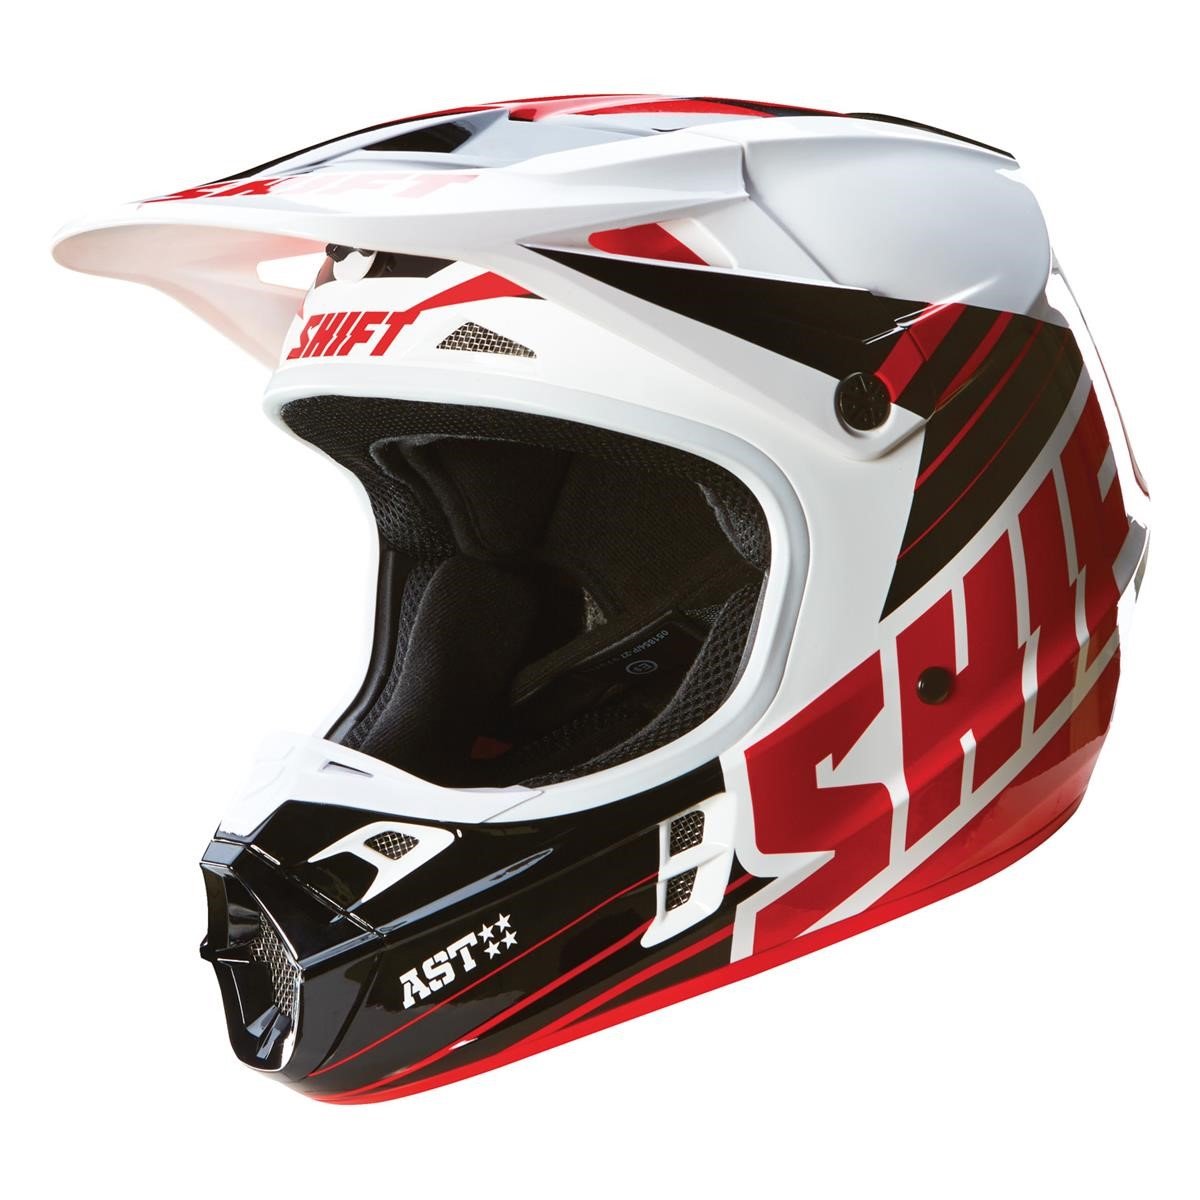 Shift Helm V1 Assault Race Schwarz/Weiß